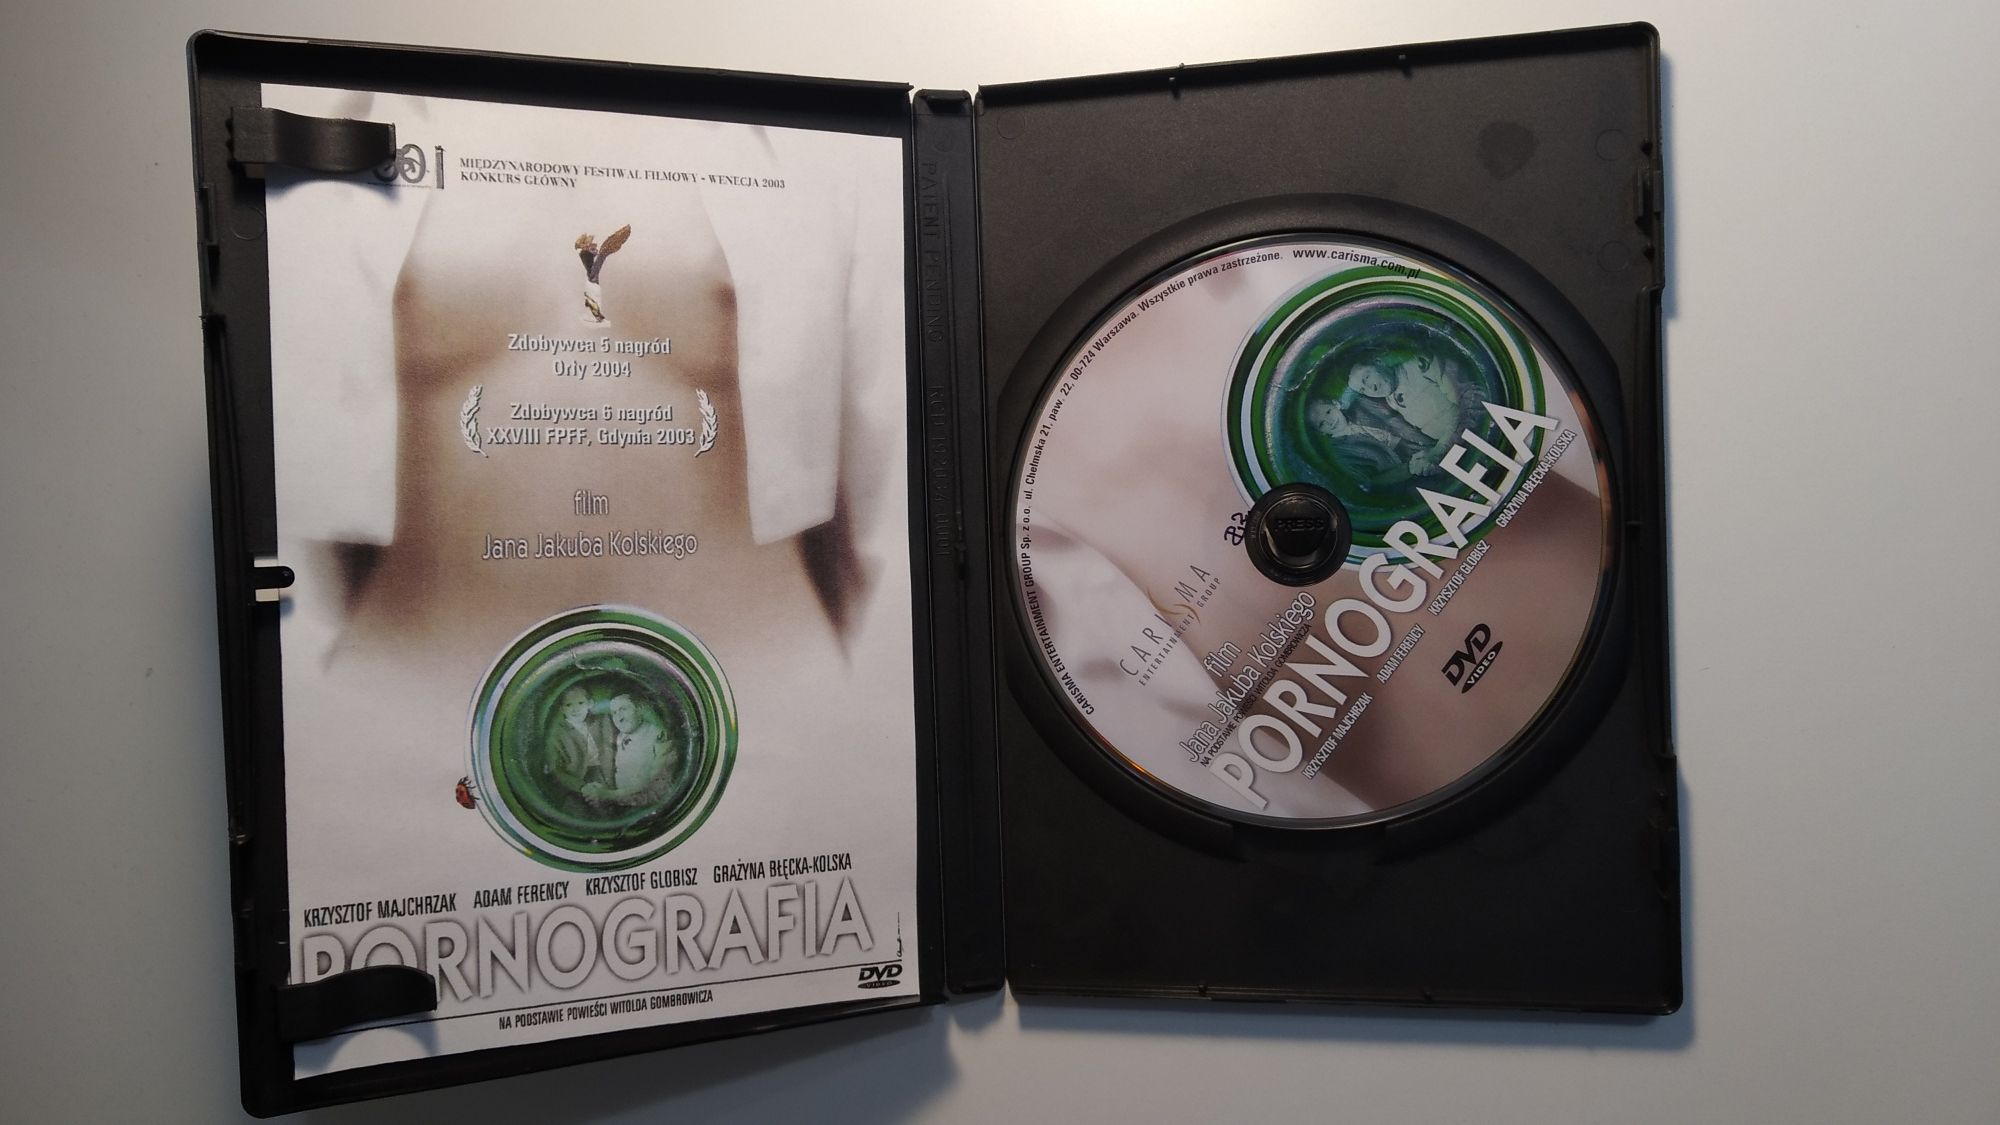 Pornografia film DVD Jan Jakub Kolski, Gombrowicz kino polskie